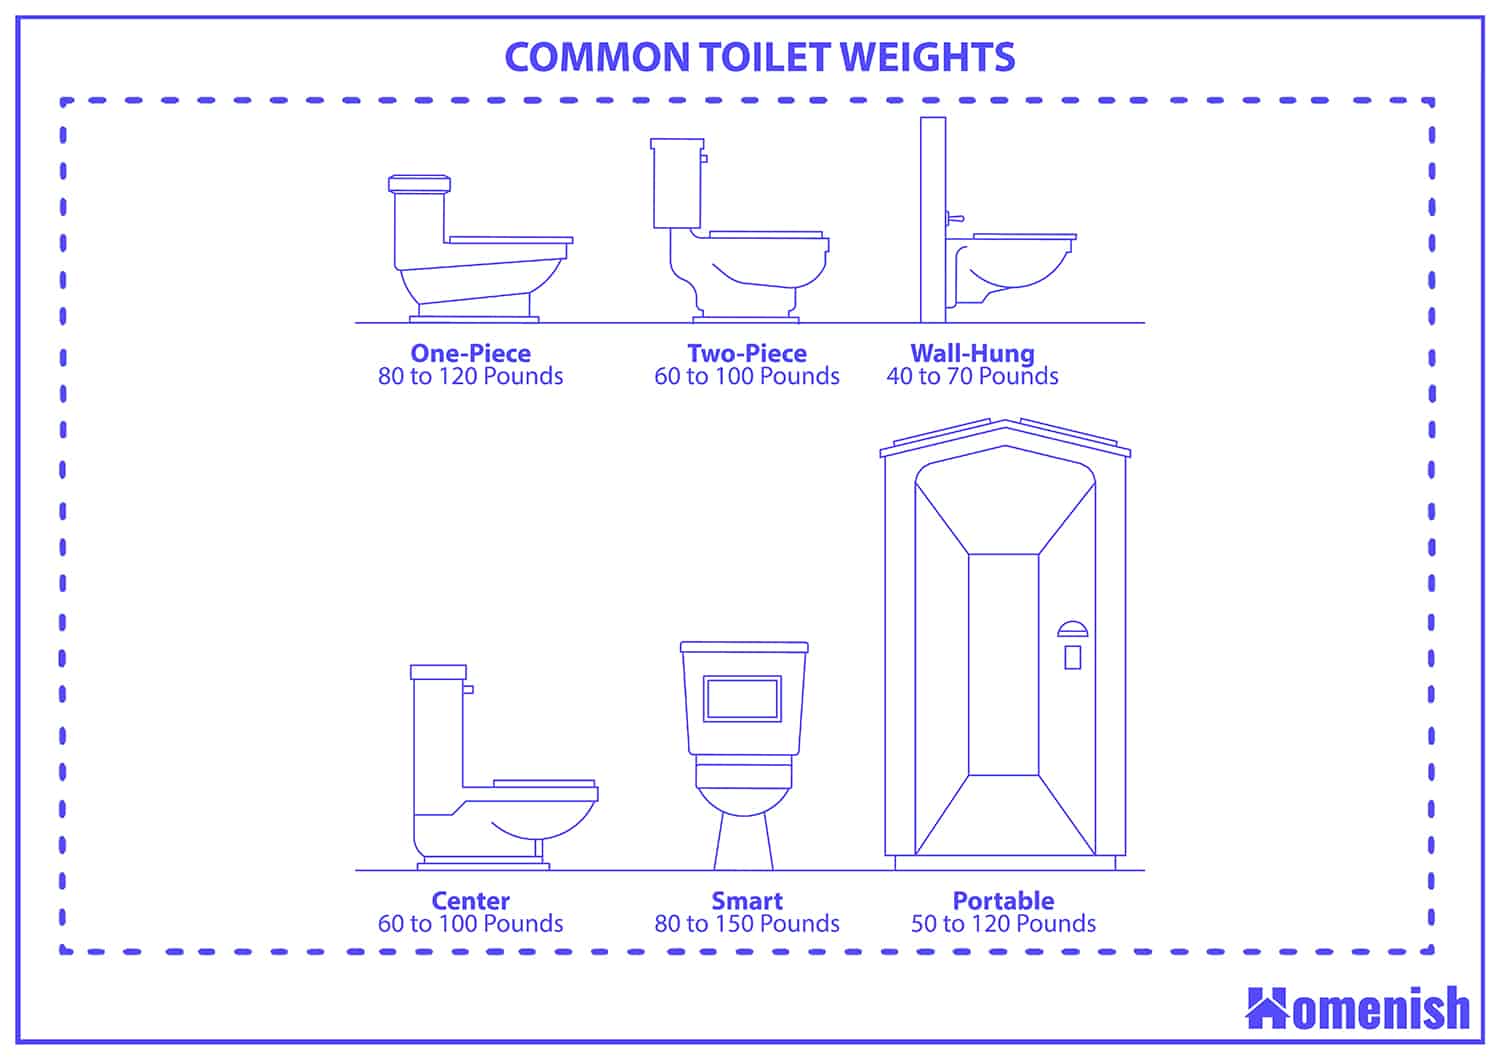 公共廁所的重量